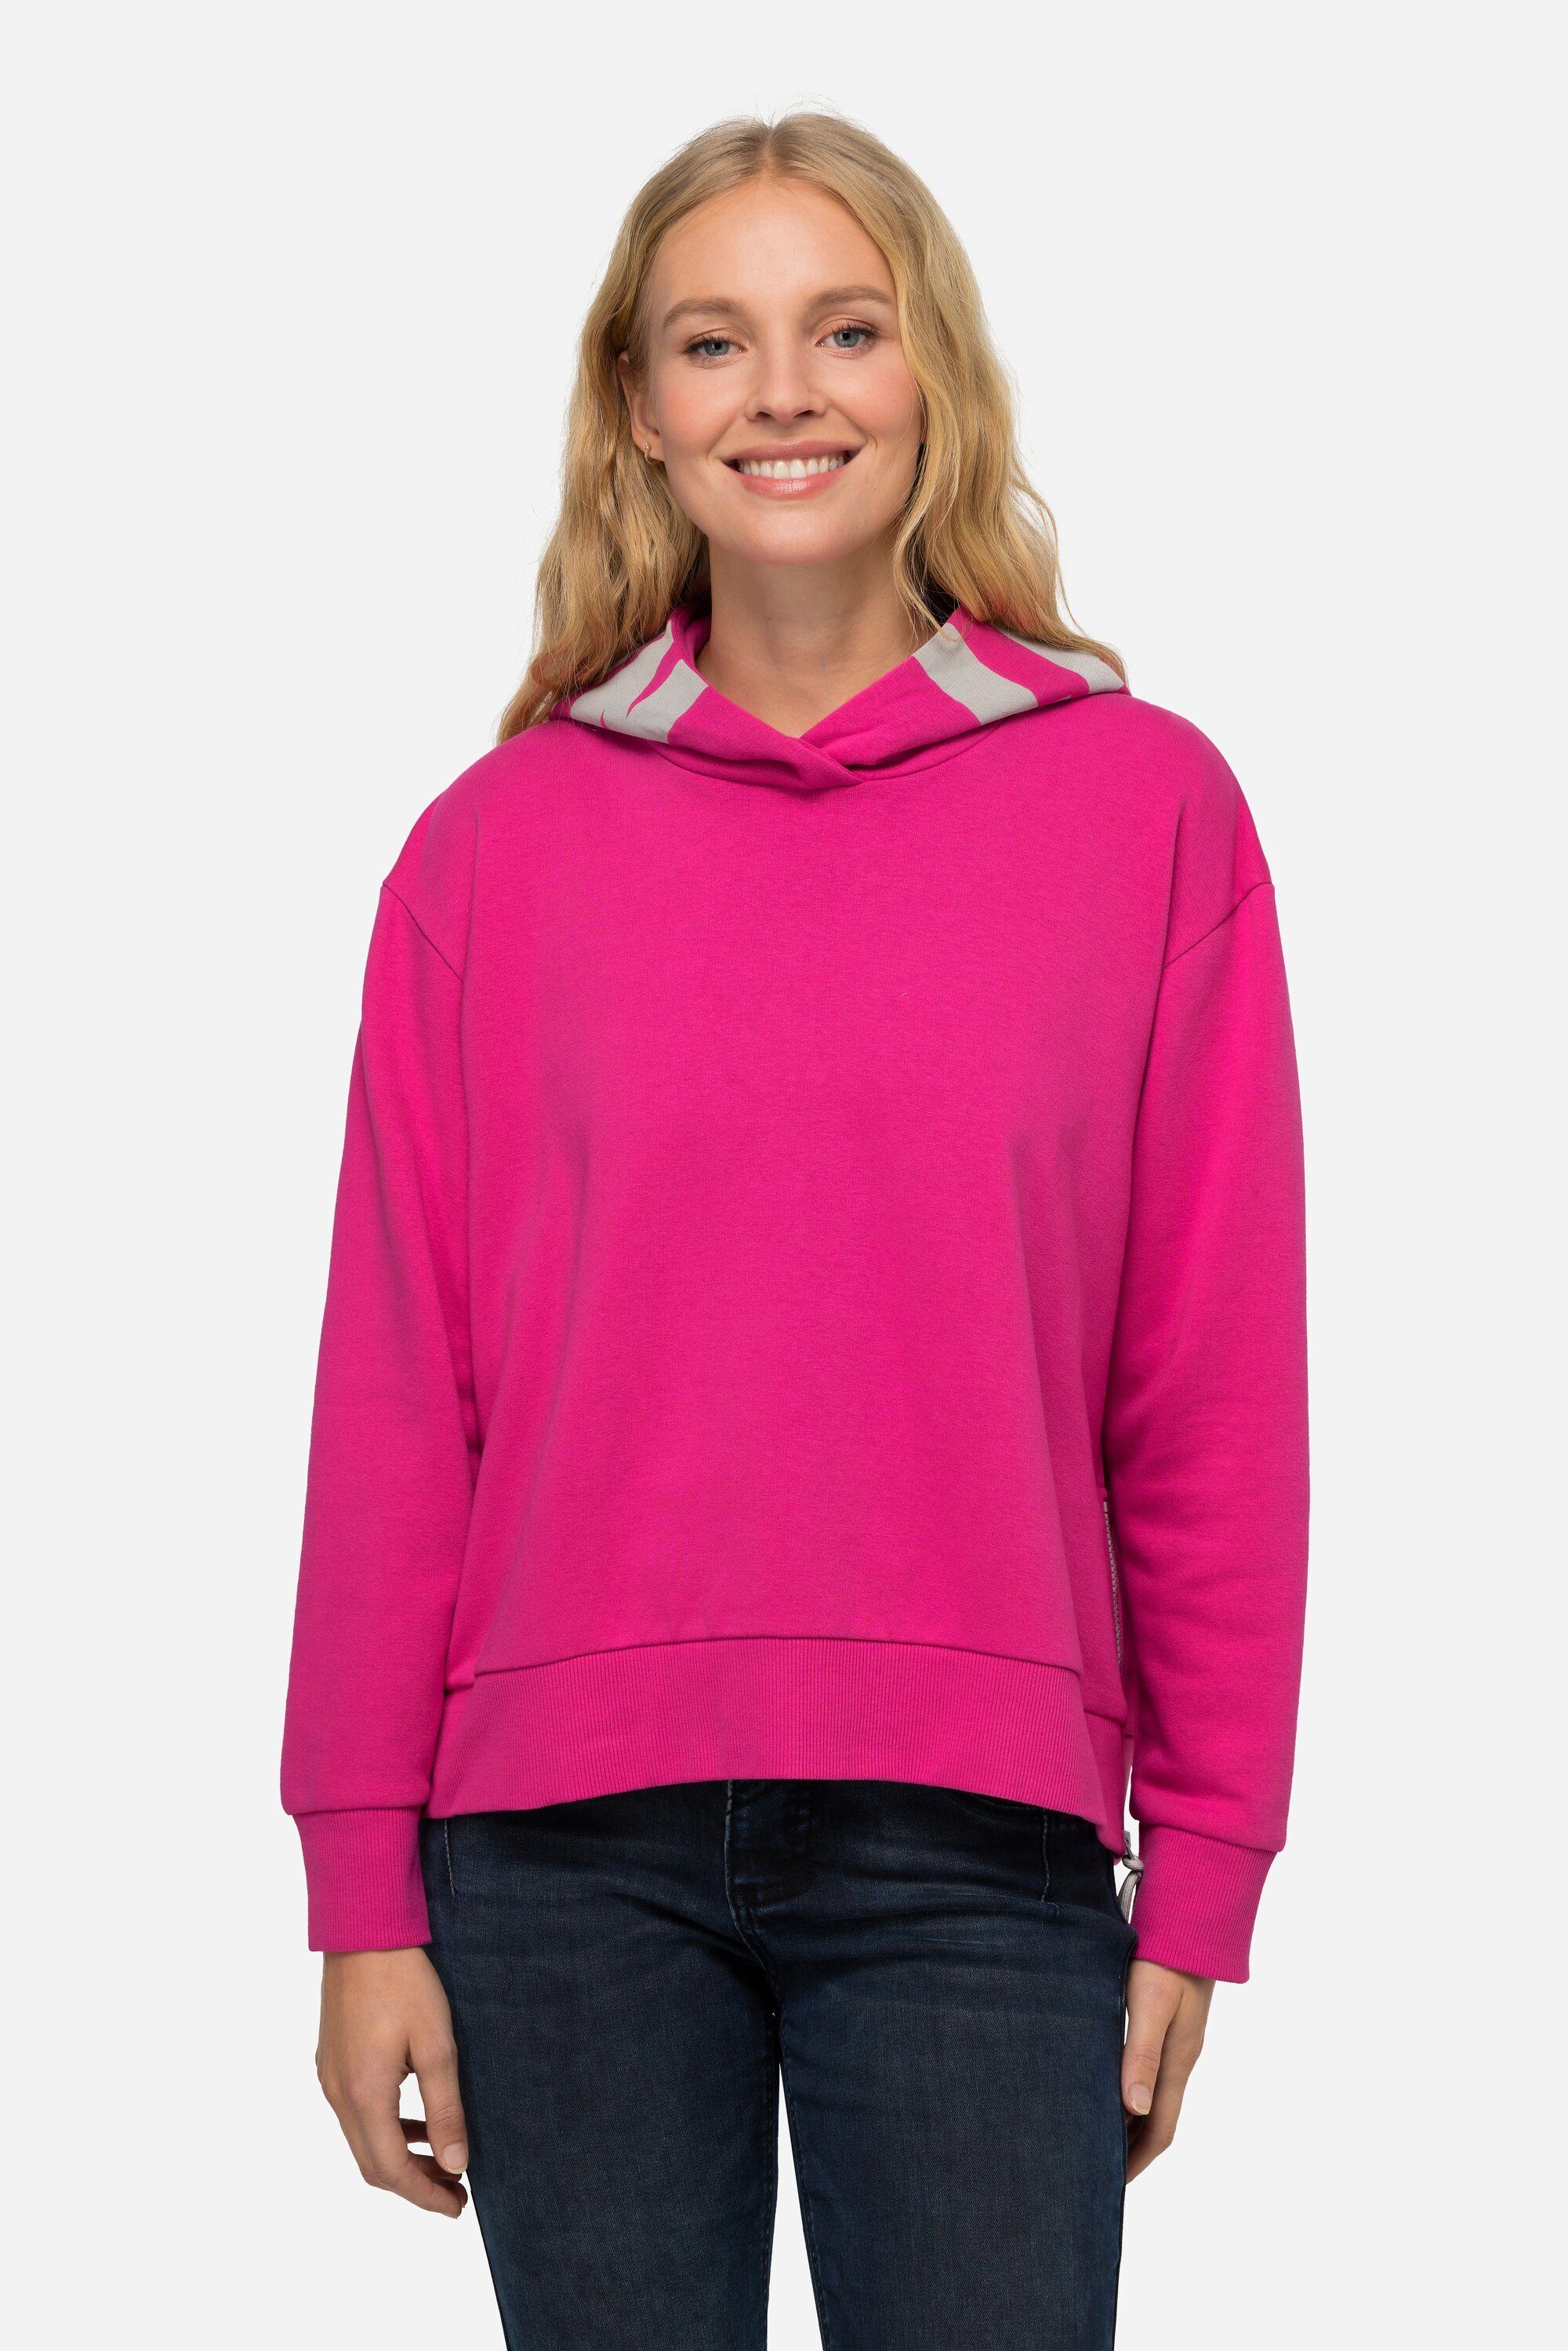 Laurasøn Sweatshirt Hoodie Kapuze mit Laurasøn-Schriftzug Langarm kräftiges pink